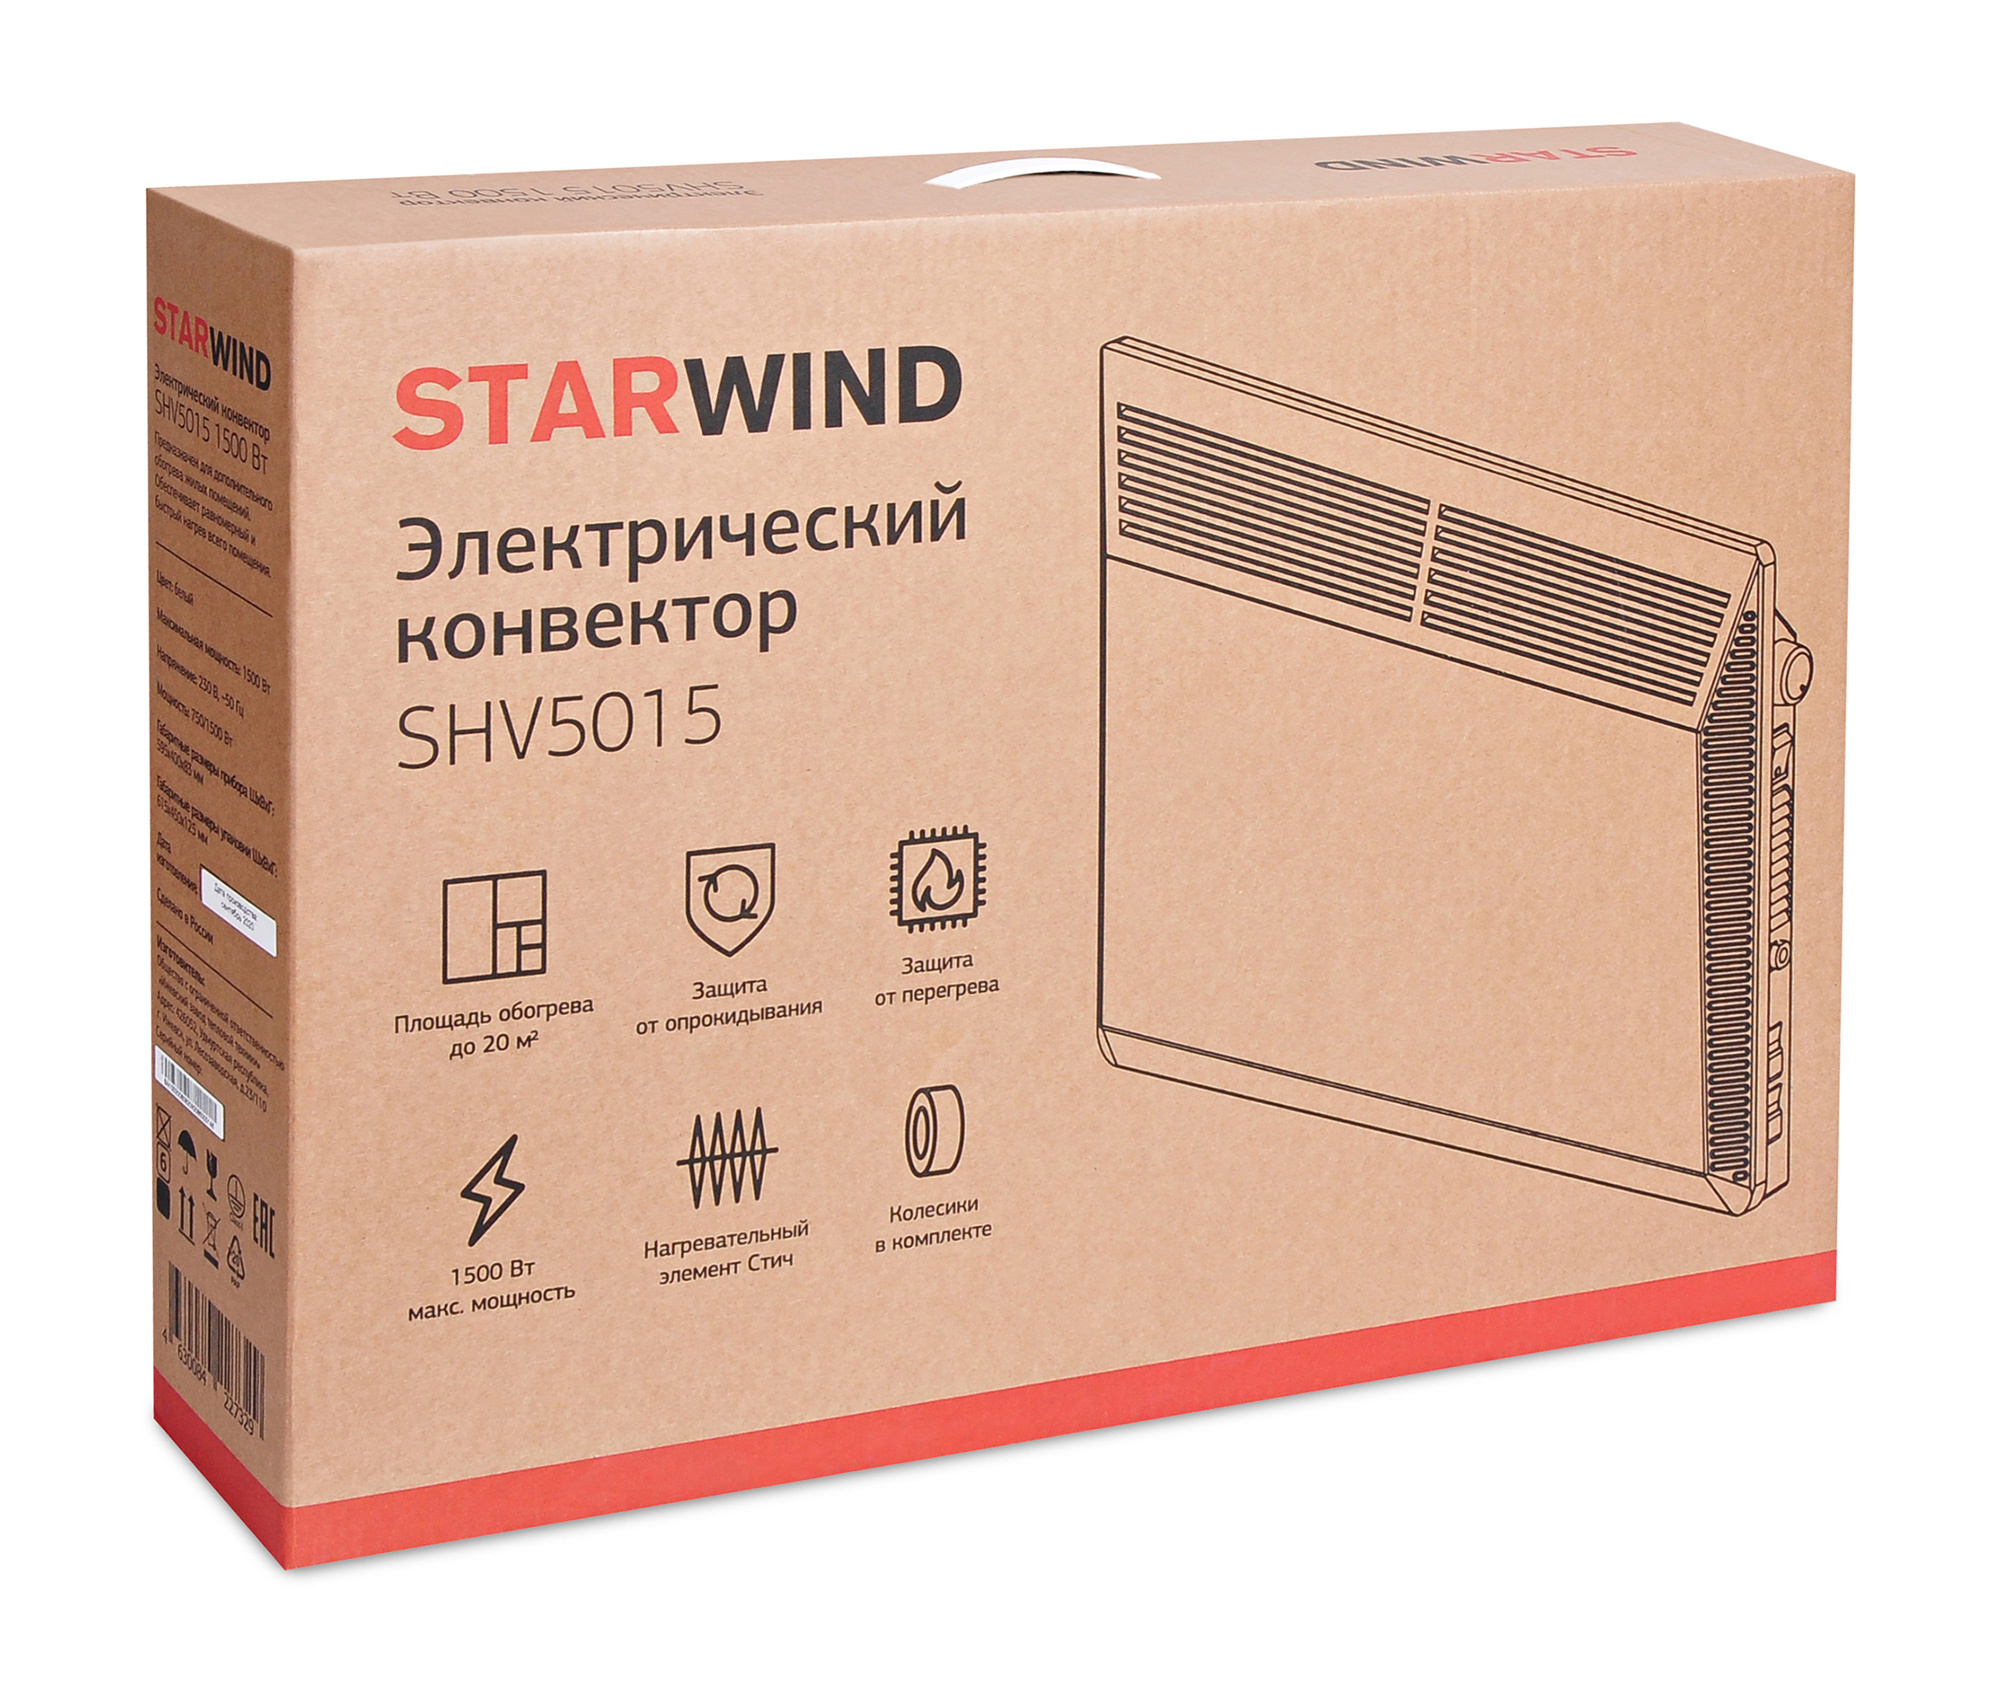 Конвектор Starwind SHV5015 белый от магазина Старвинд